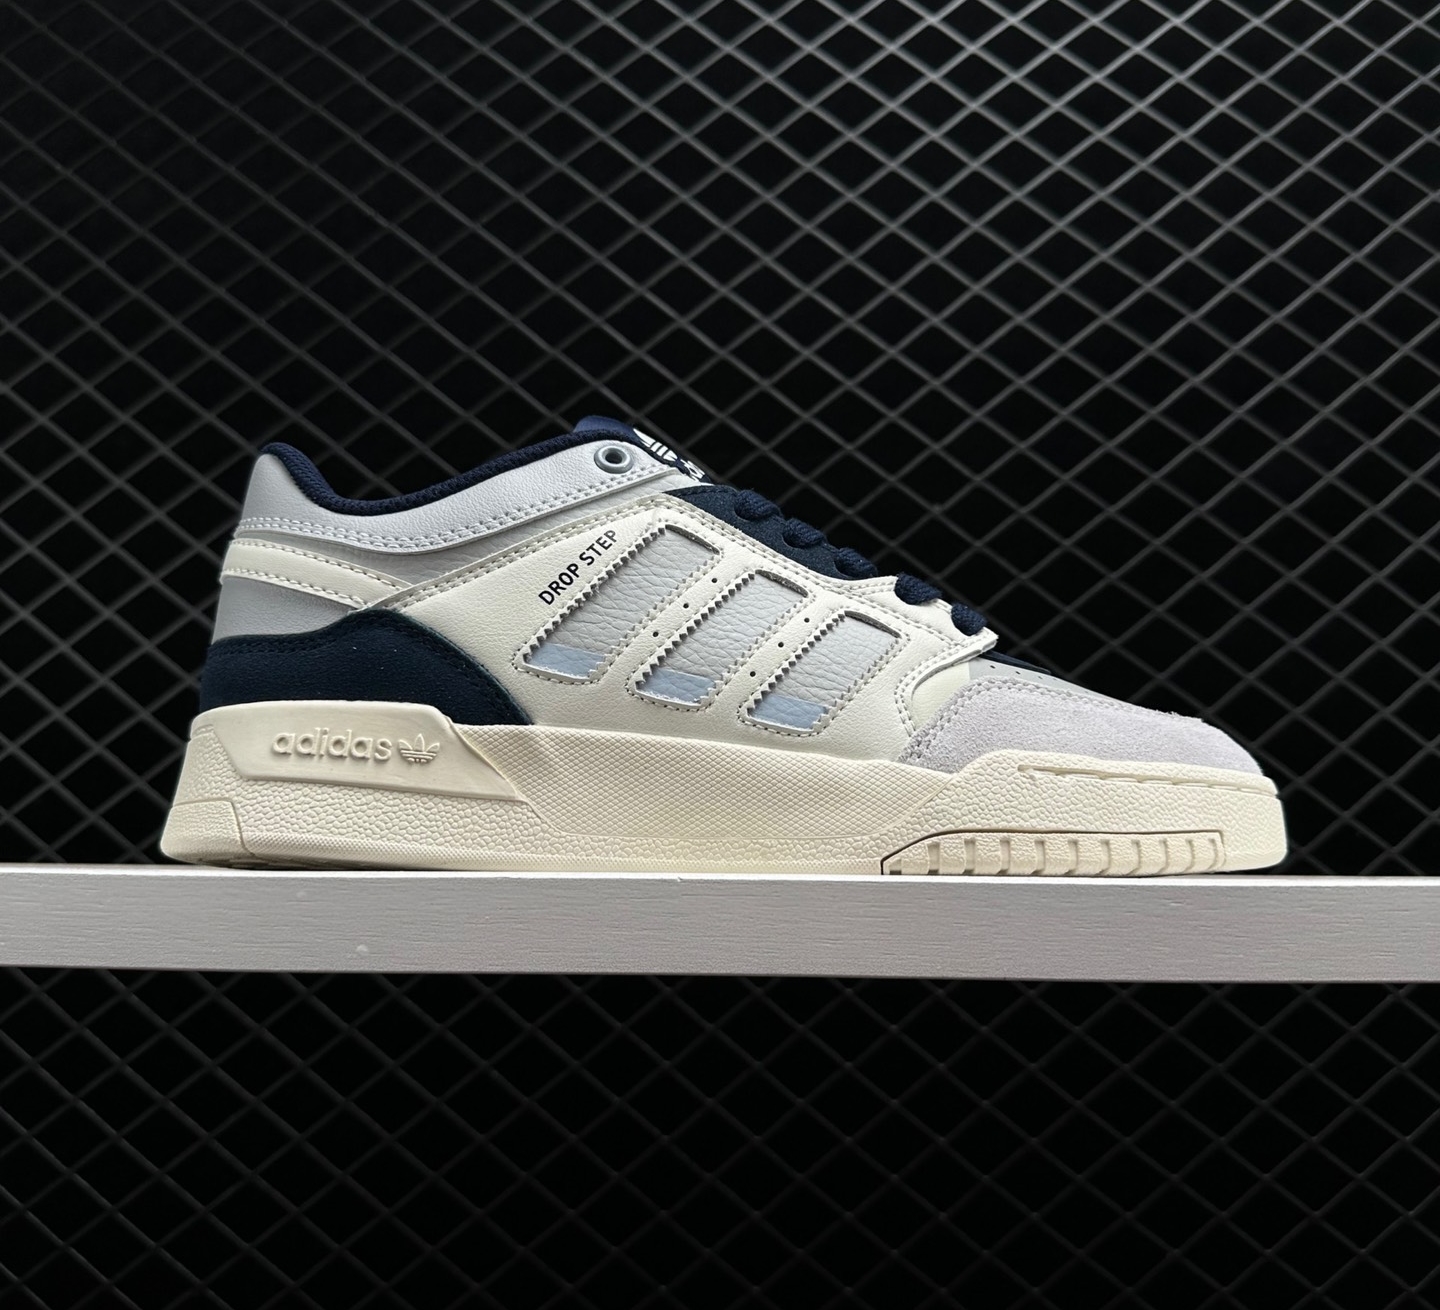 Adidas Originals Drop Step Low 'Gray White Light Grayblue': Shop Now!